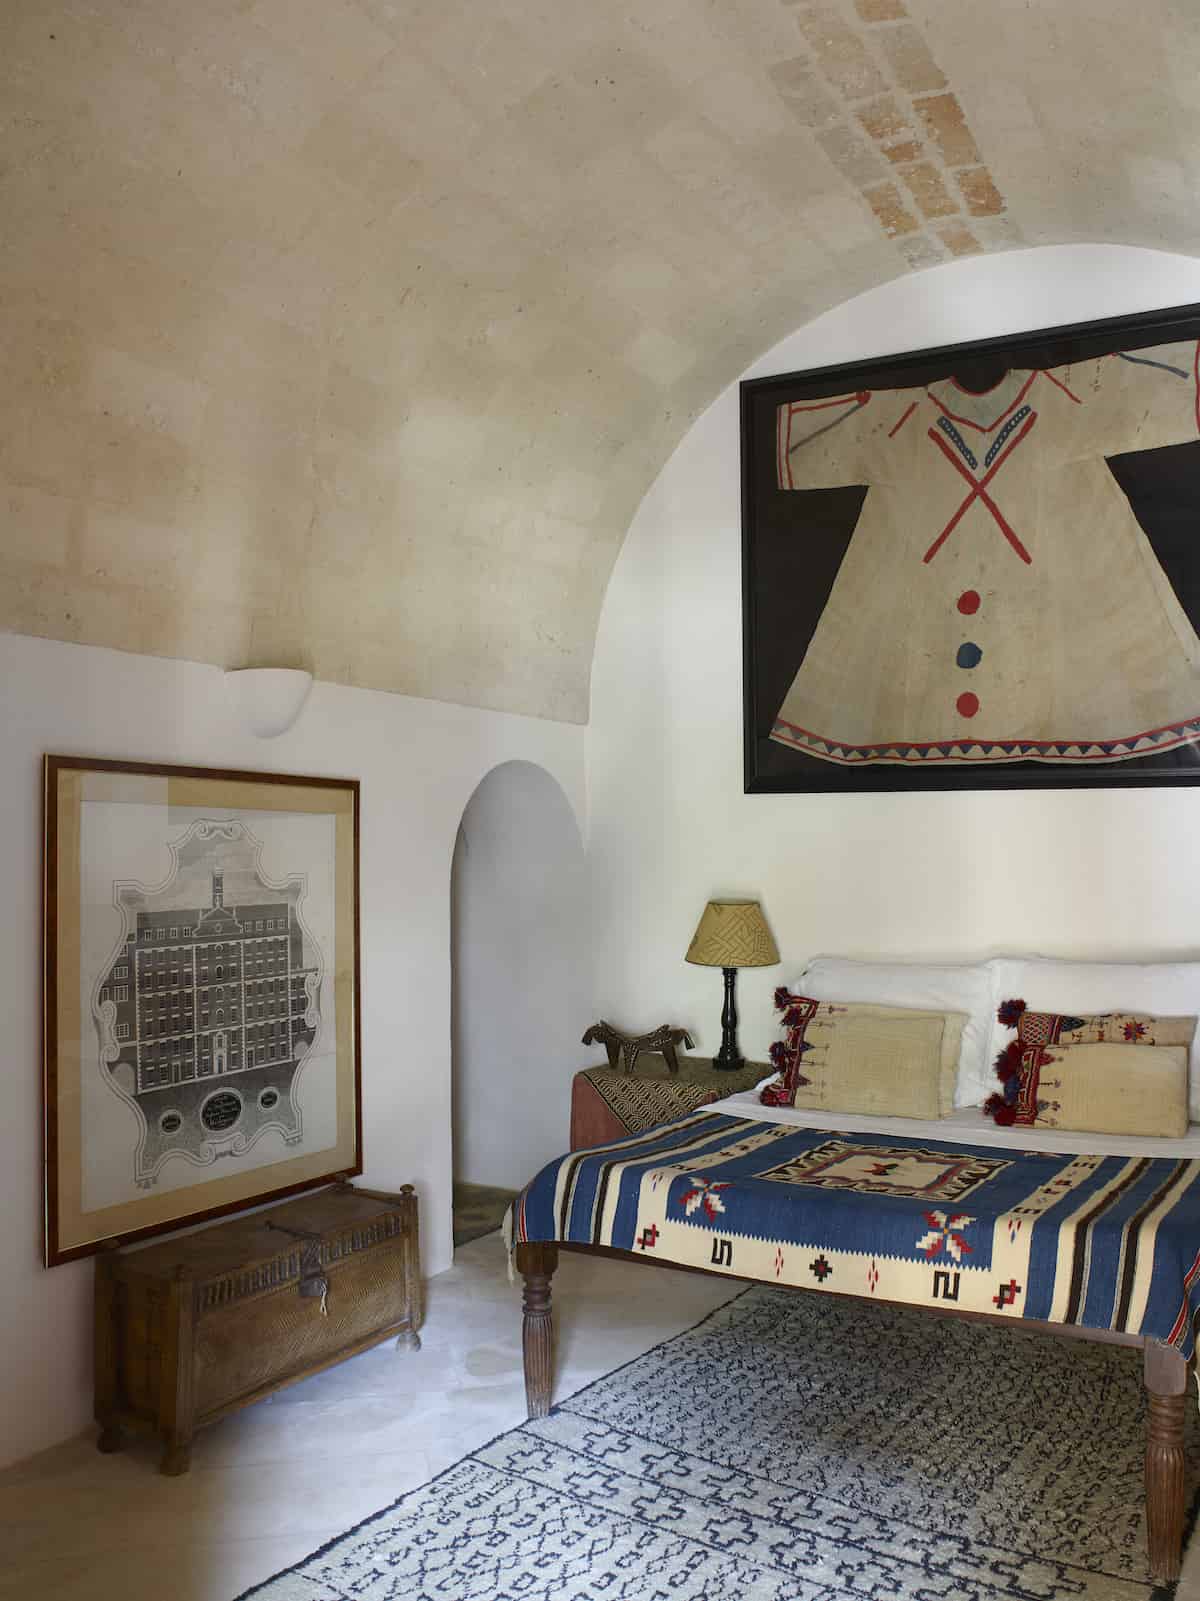 The Navajo Room, Il Convento di Santa Maria di Costantinopoli.